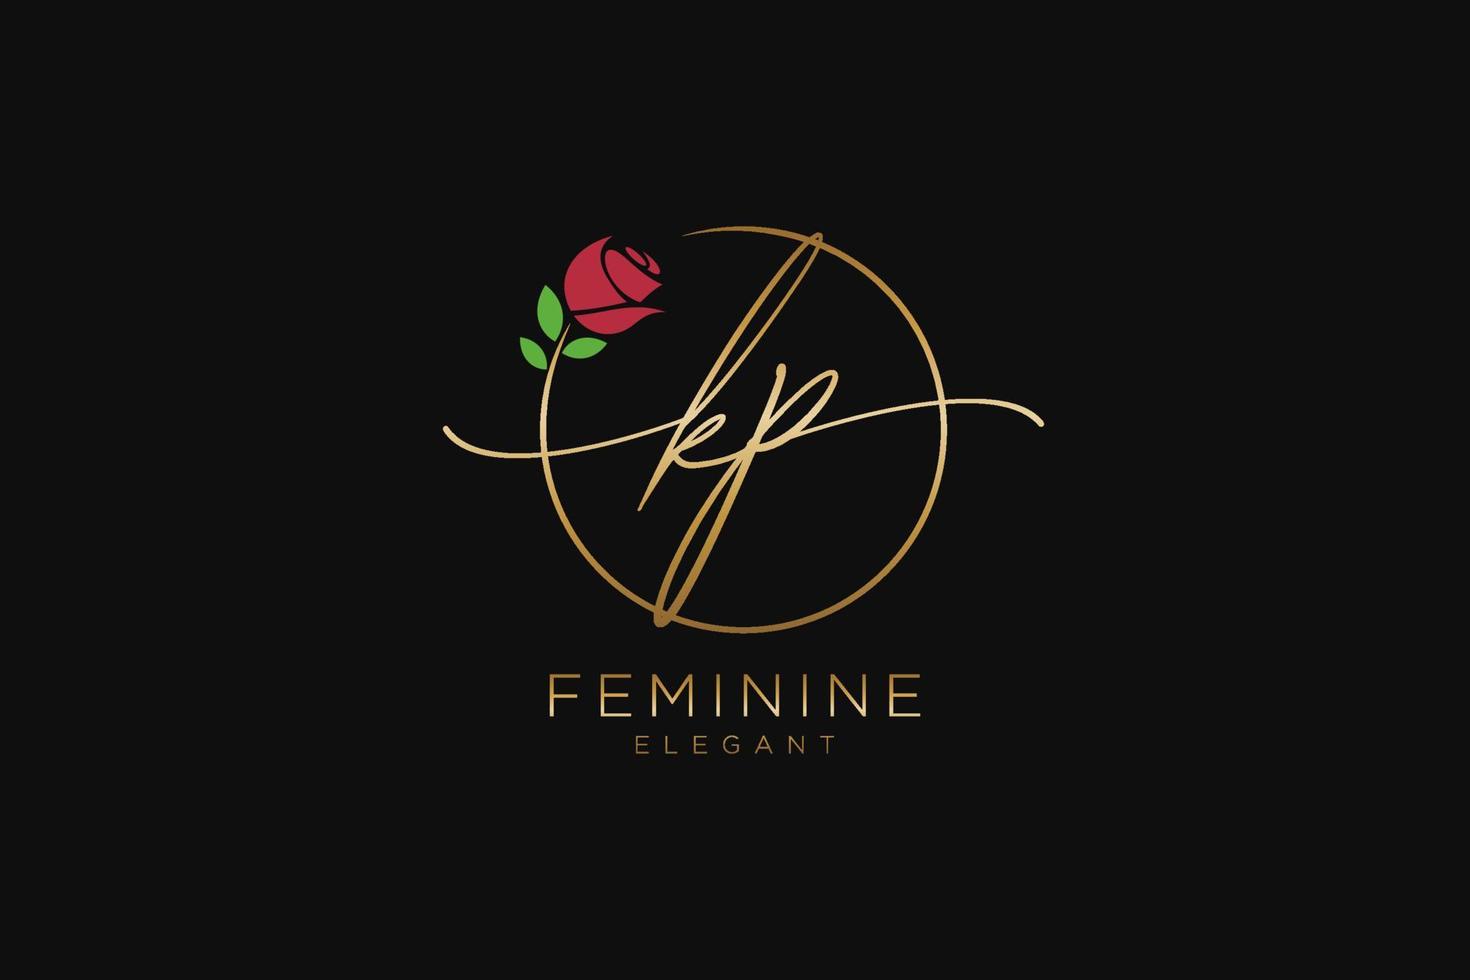 monogramme de beauté du logo féminin initial kp et création de logo élégante, logo manuscrit de la signature initiale, mariage, mode, floral et botanique avec modèle créatif. vecteur